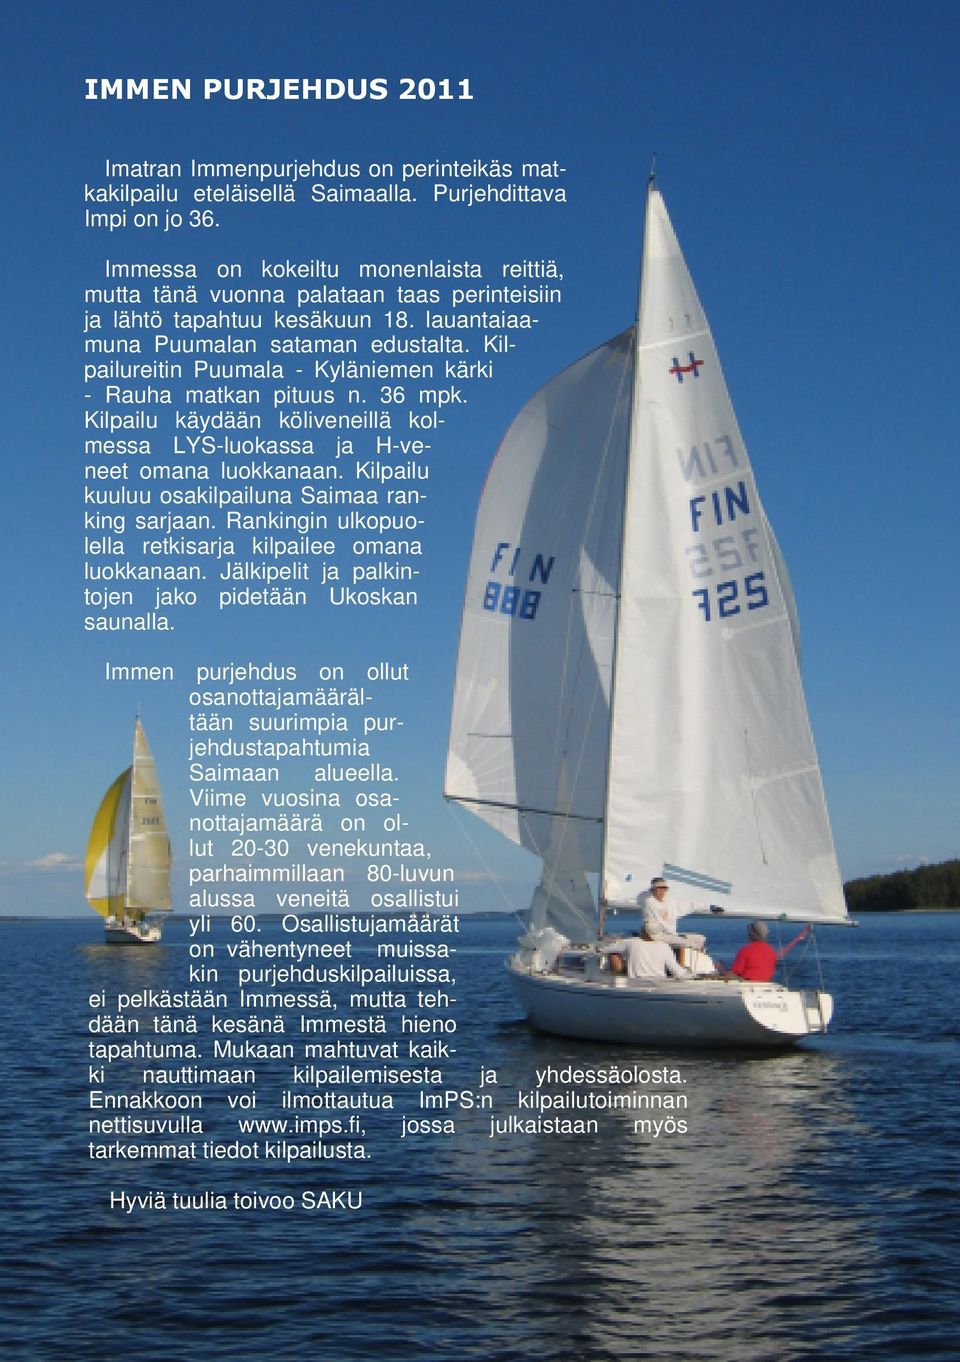 Kilpailureitin Puumala - Kyläniemen kärki - Rauha matkan pituus n. 36 mpk. Kilpailu käydään köliveneillä kolmessa LYS-luokassa ja H-veneet omana luokkanaan.